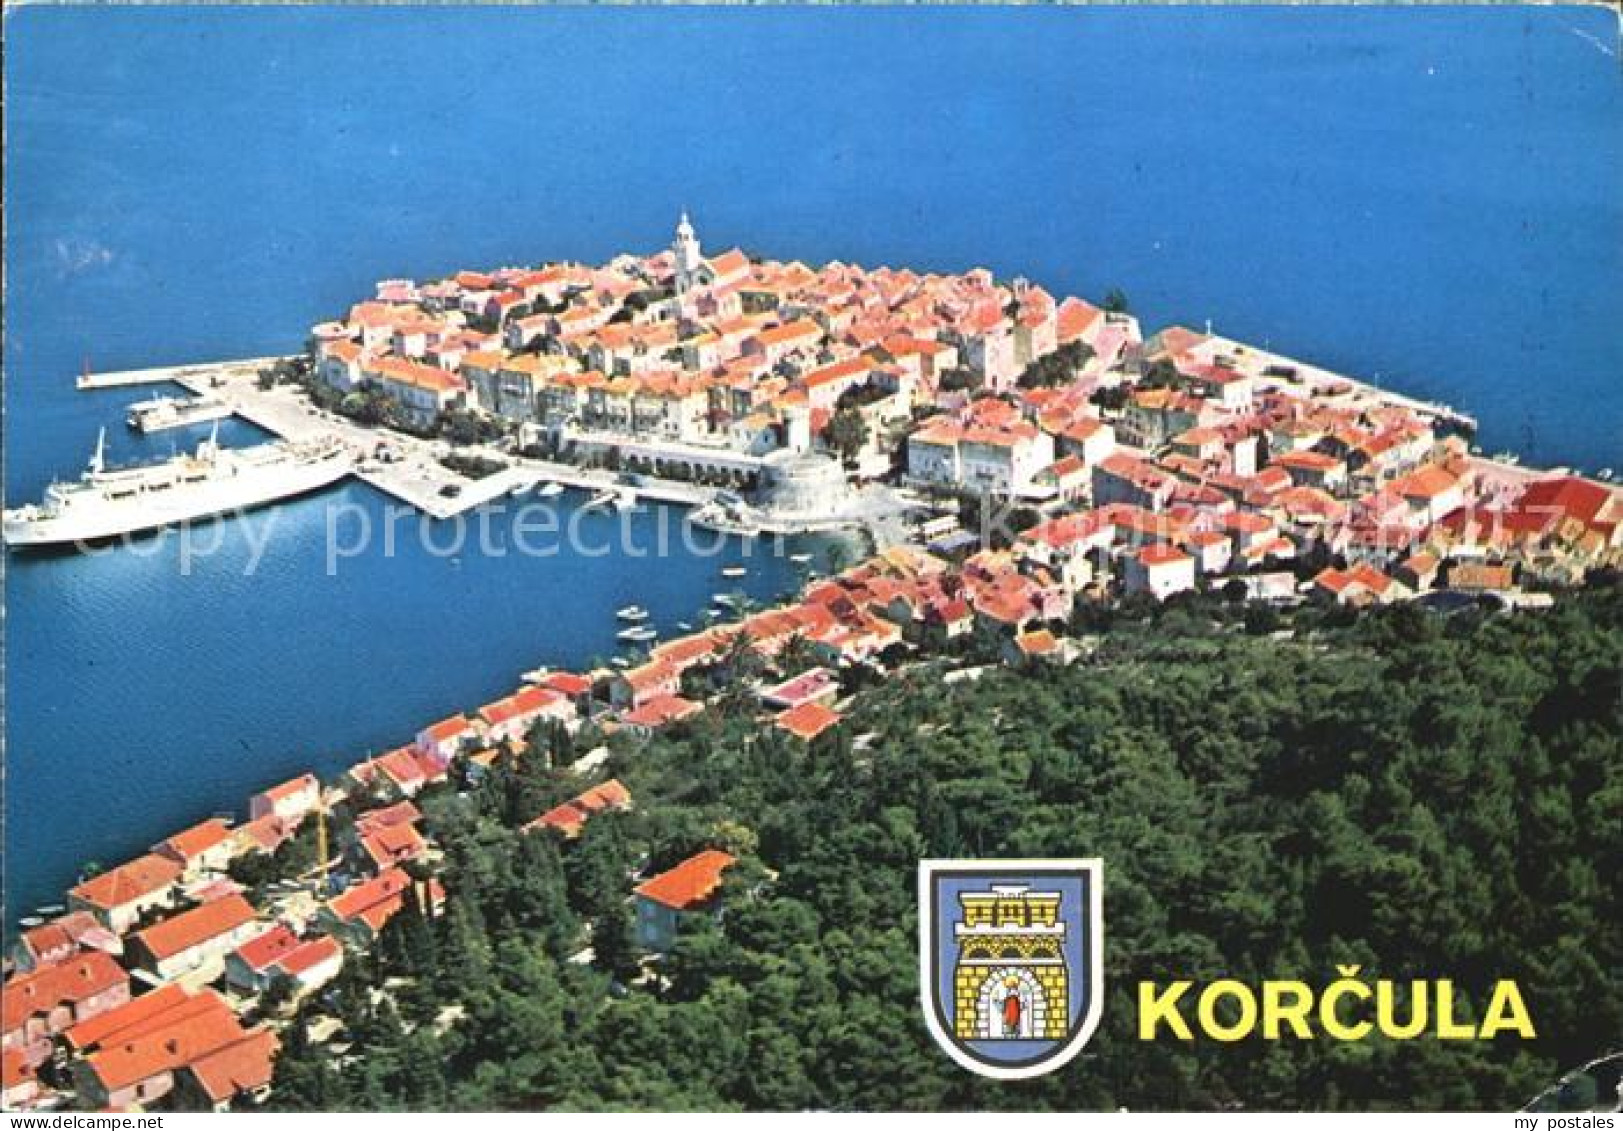 72574218 Korcula Luftaufnahme Croatia - Croatie